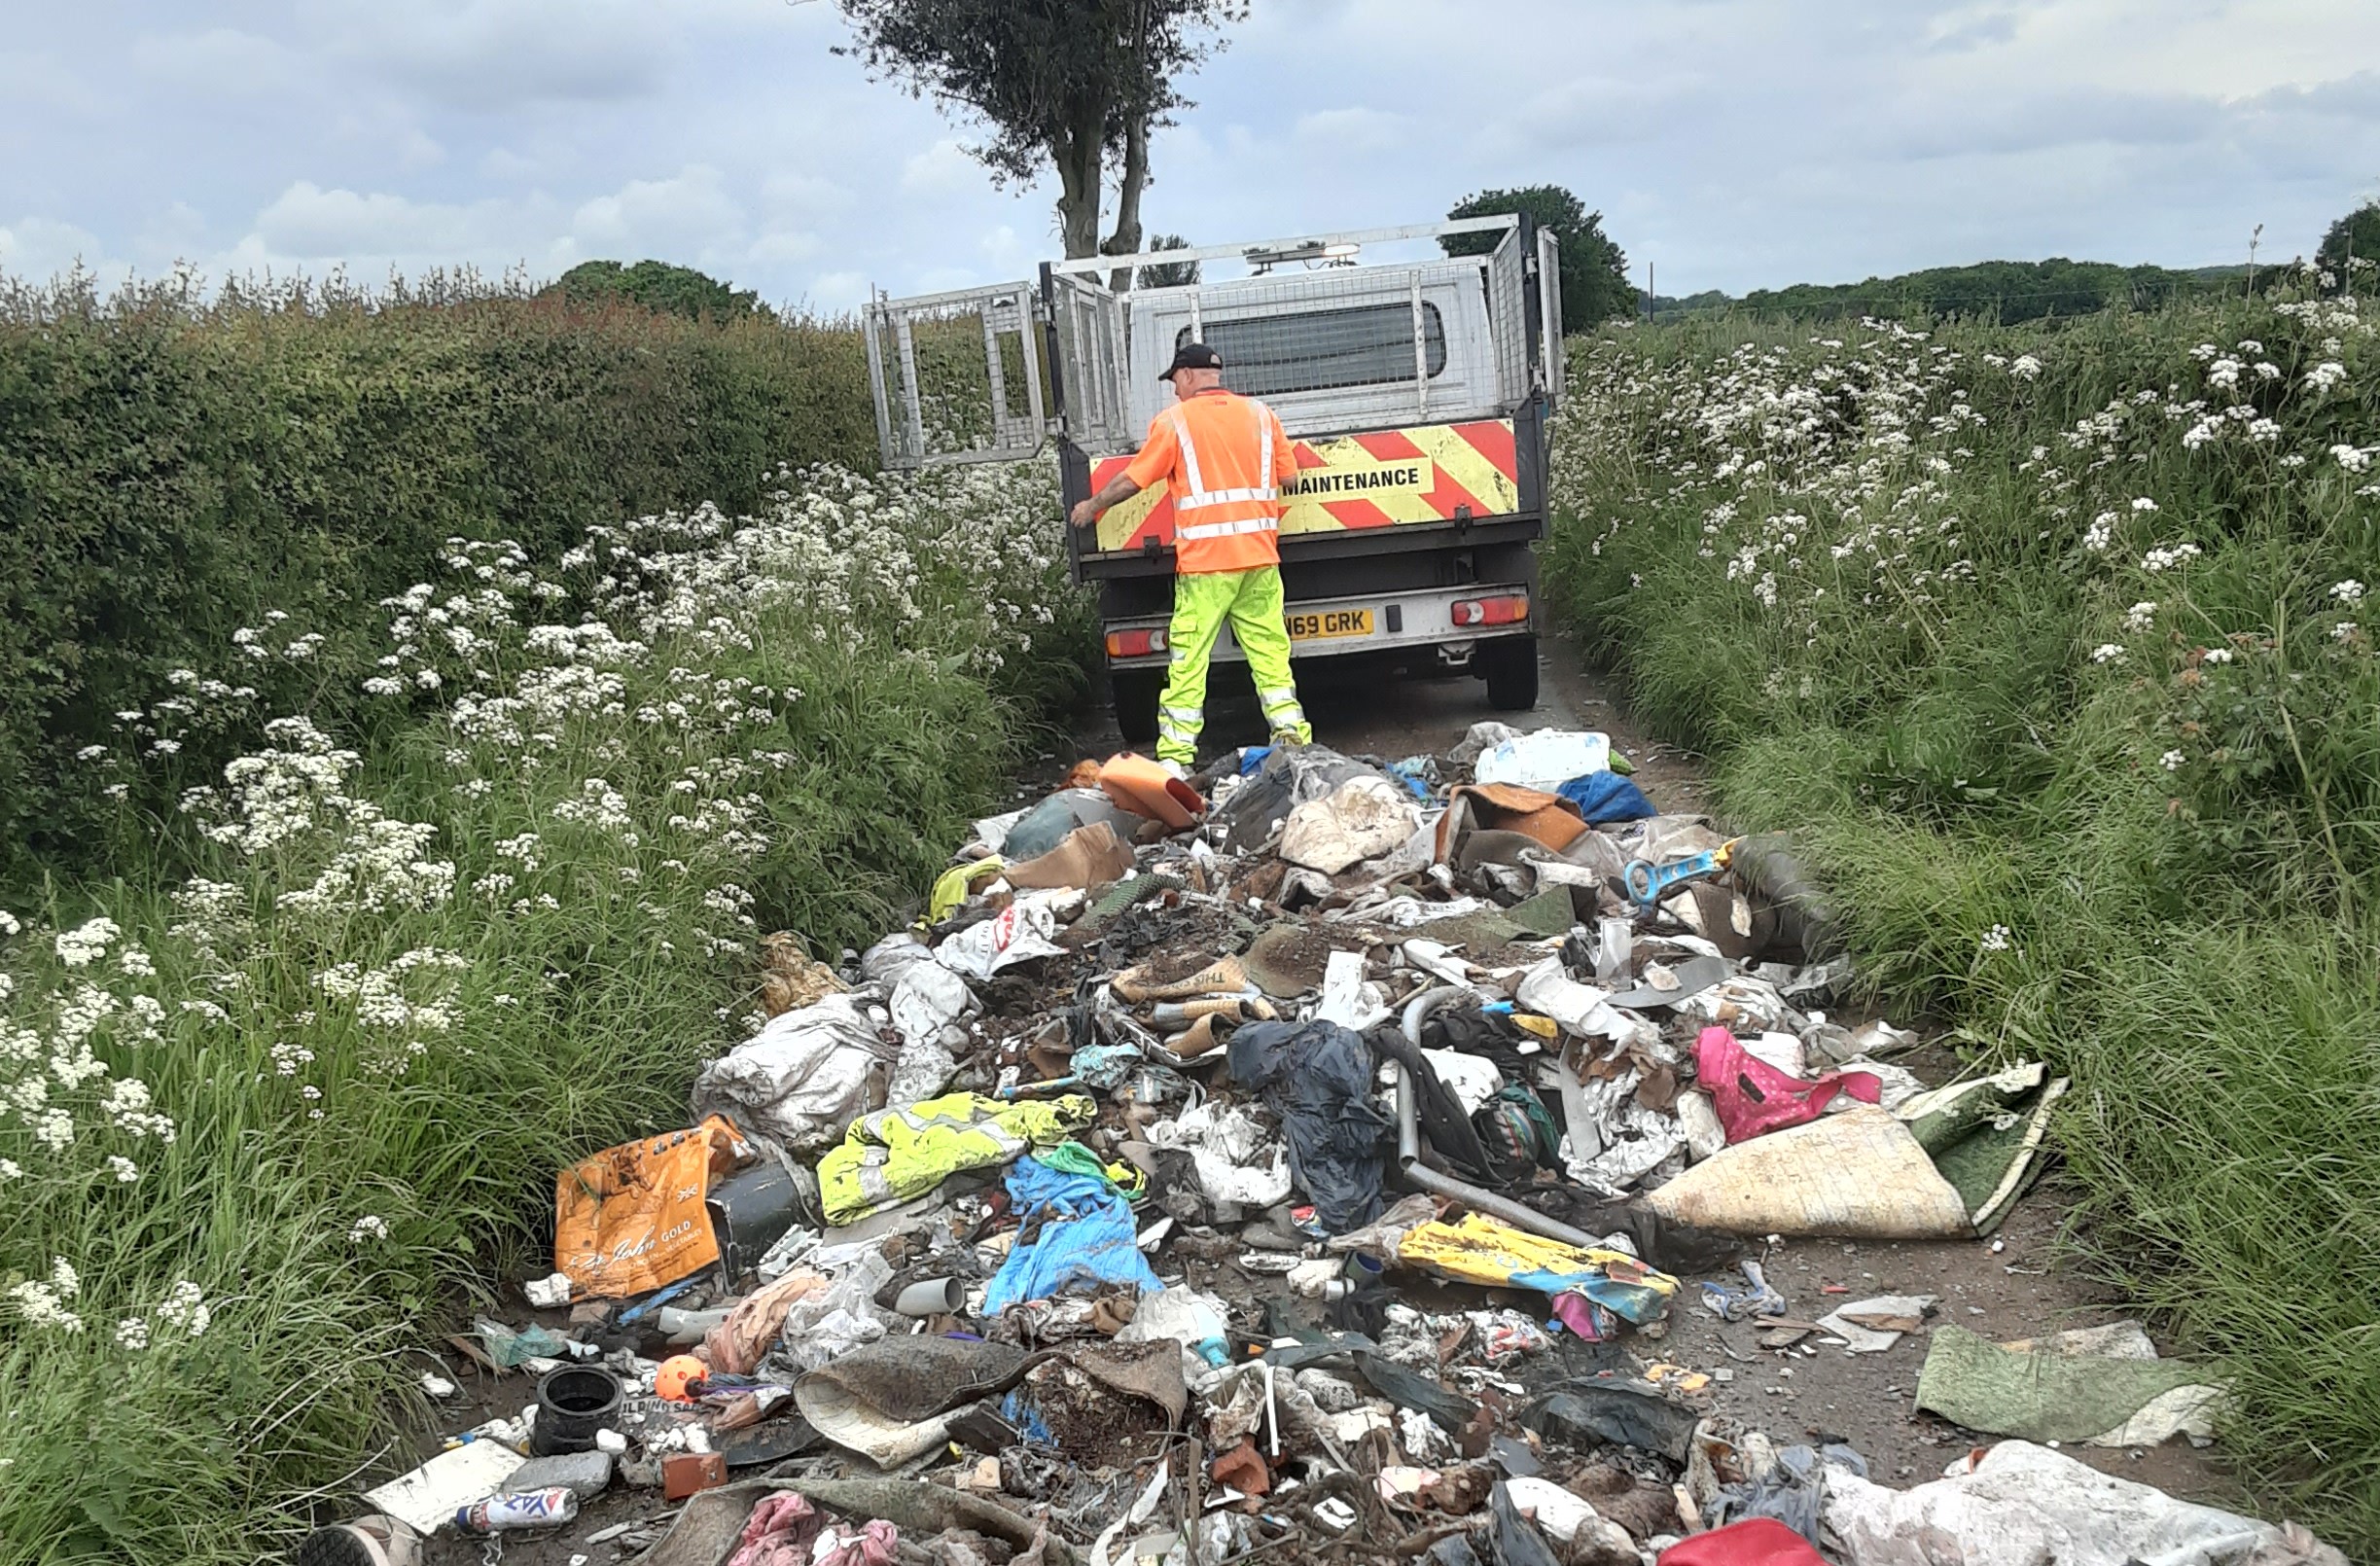 Waste material was dumped in Raikes Lane, near Shenstone last Thursday.